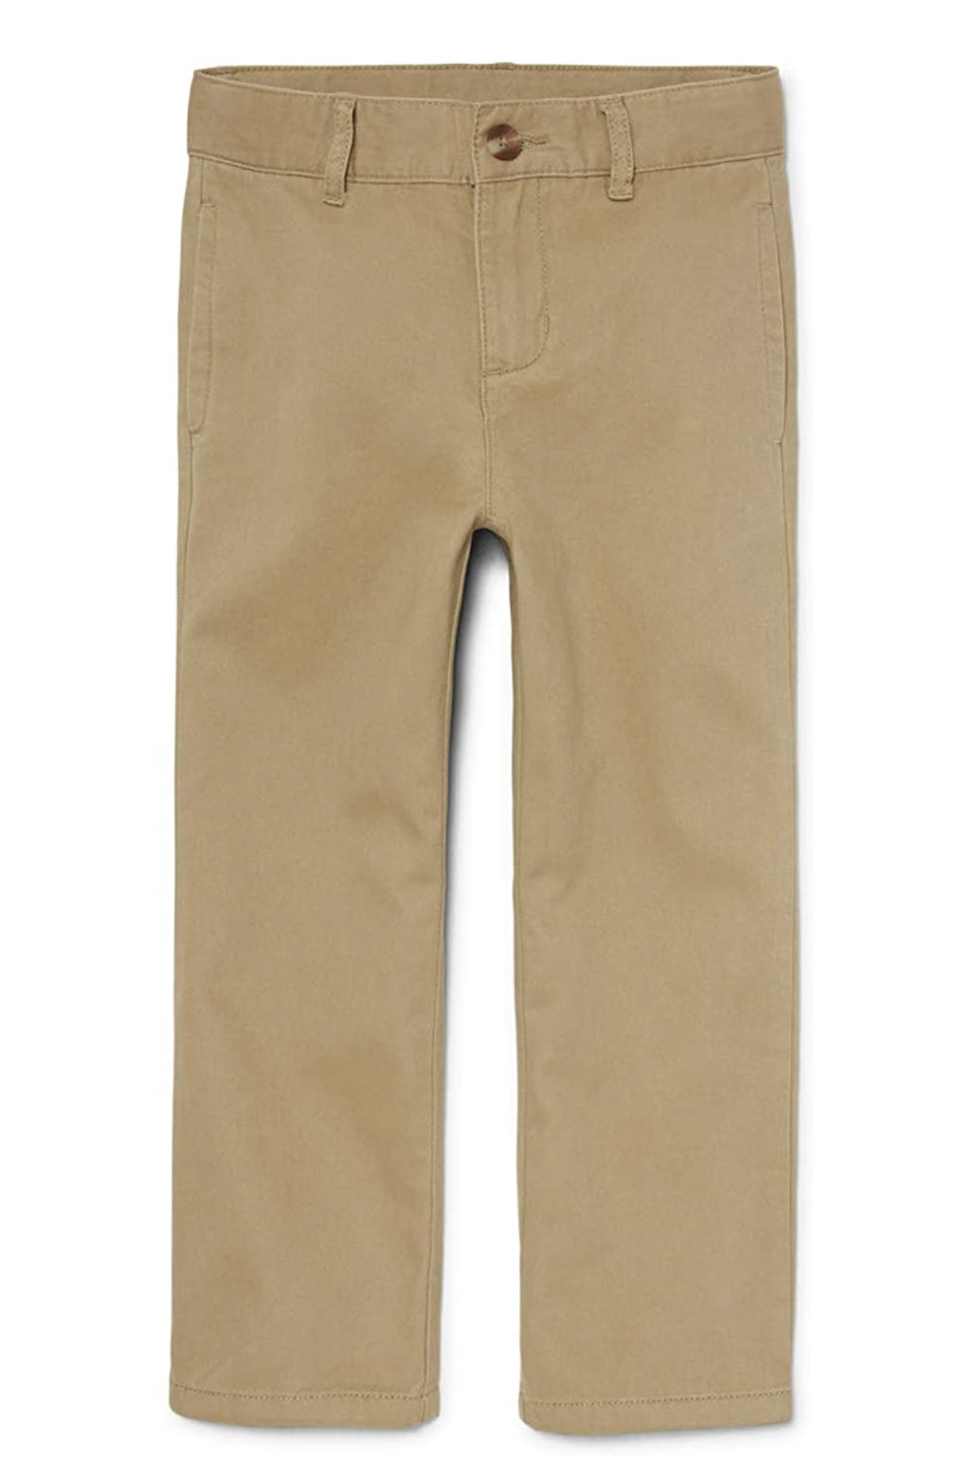 khaki pants for kids